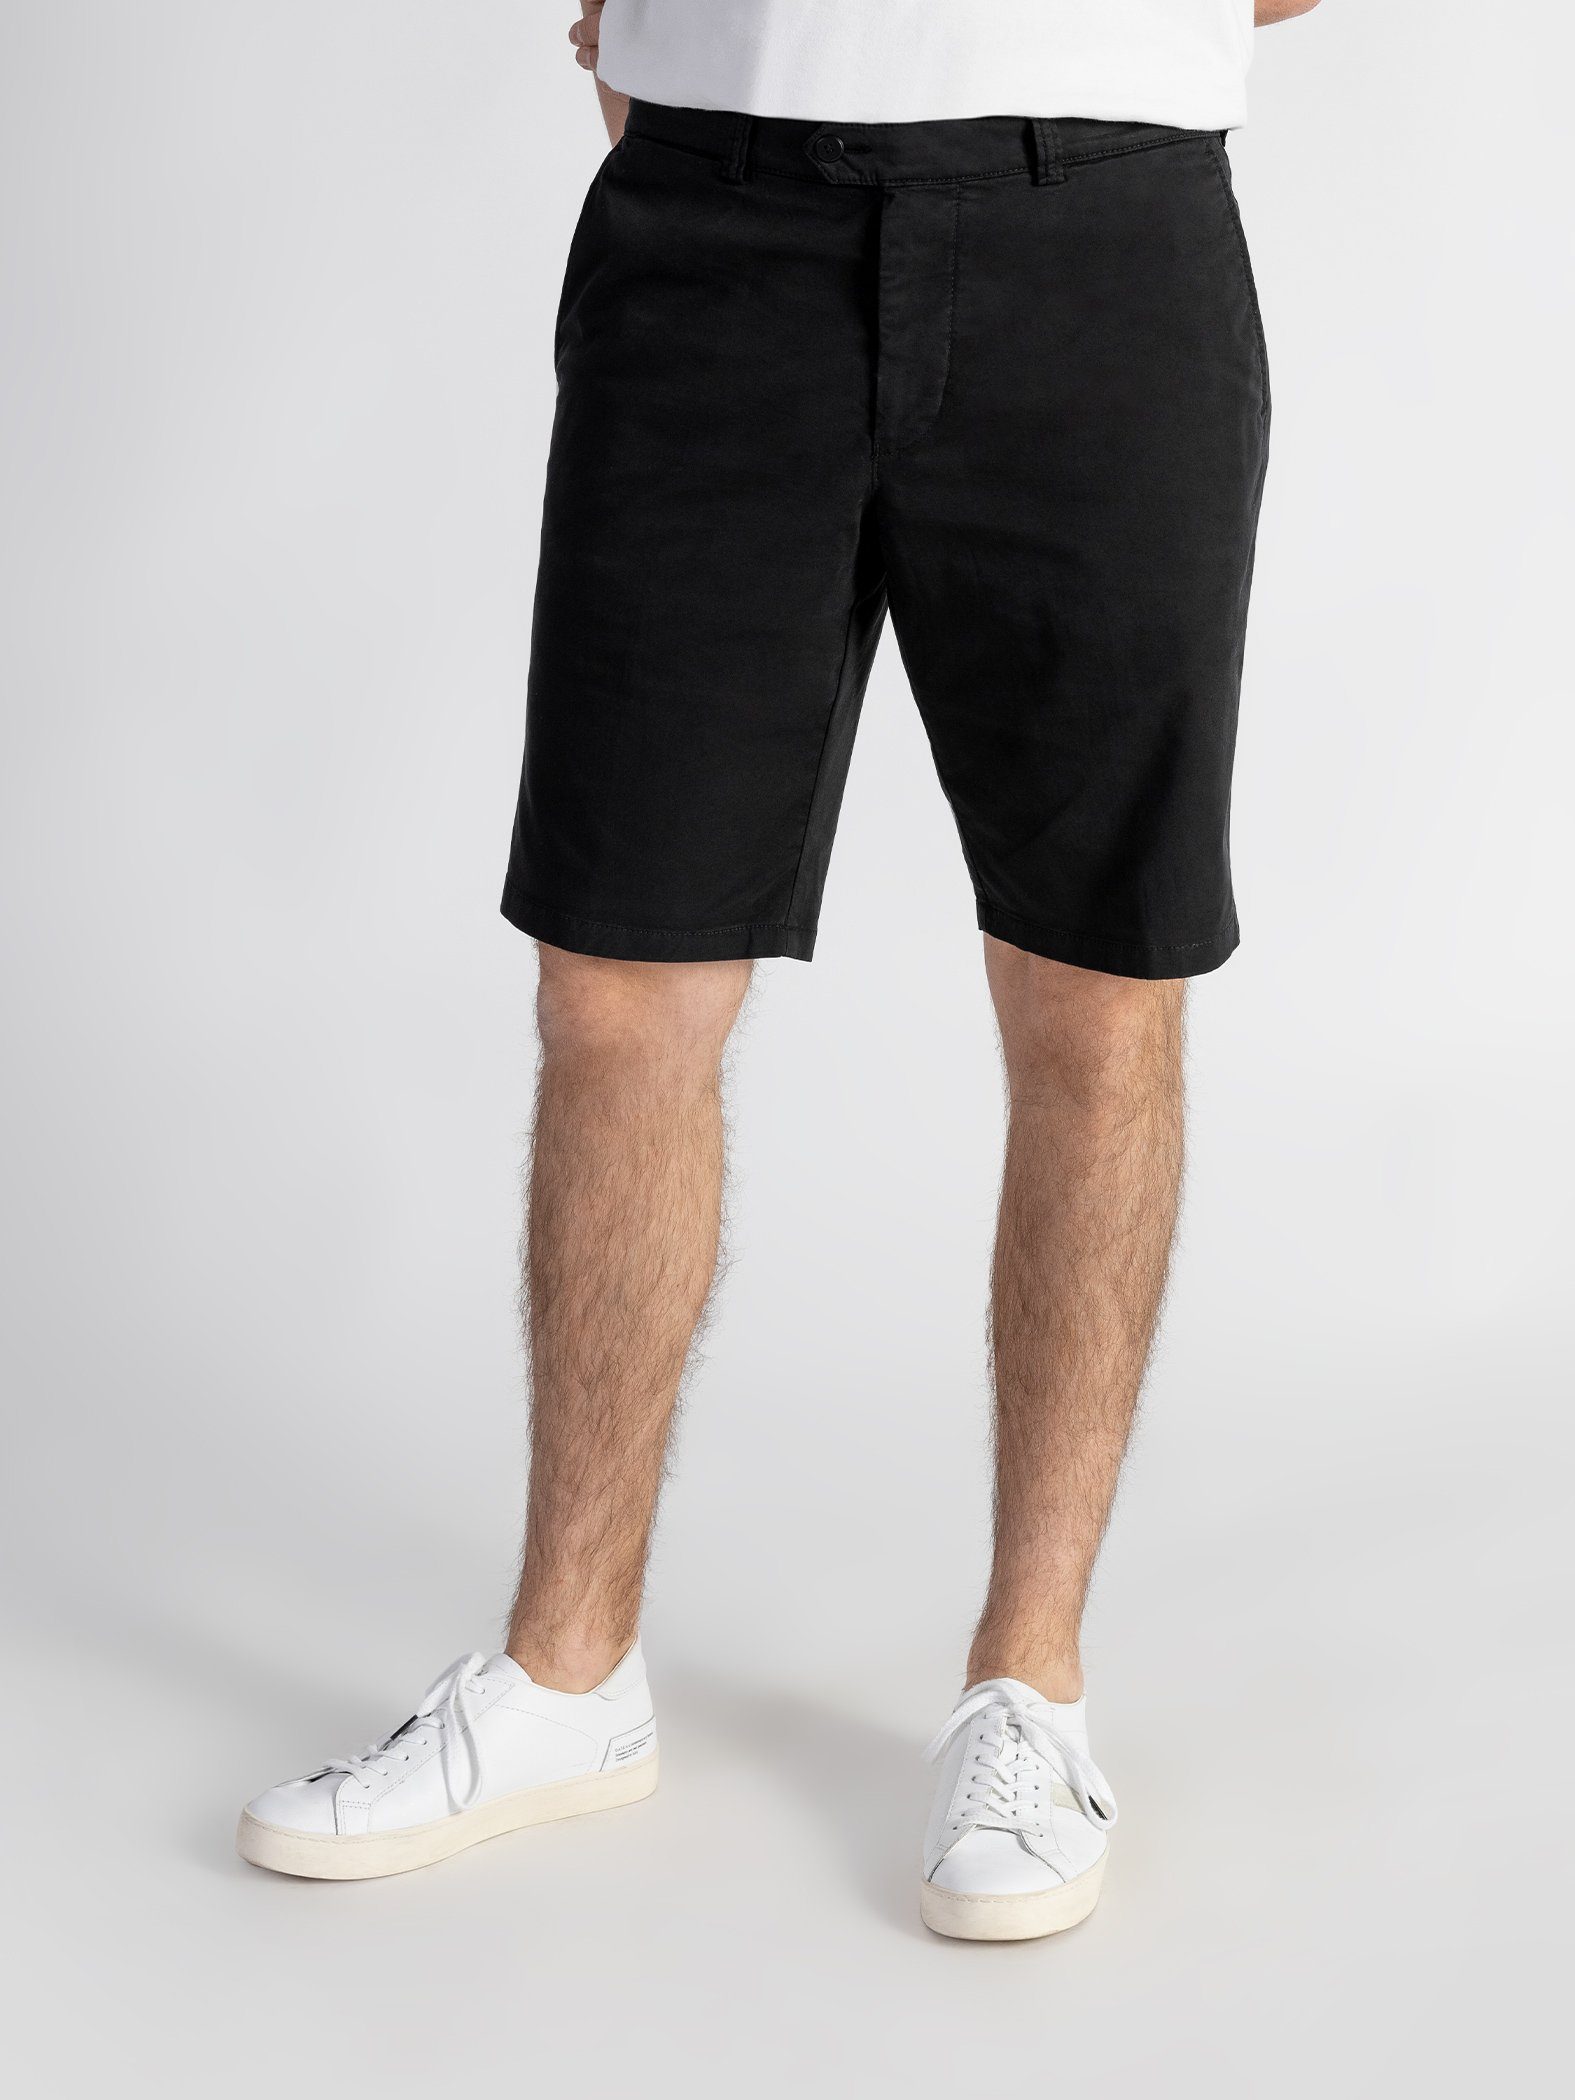 Shorts mit TwoMates Bund, GOTS-zertifiziert elastischem Schwarz Farbauswahl, Shorts